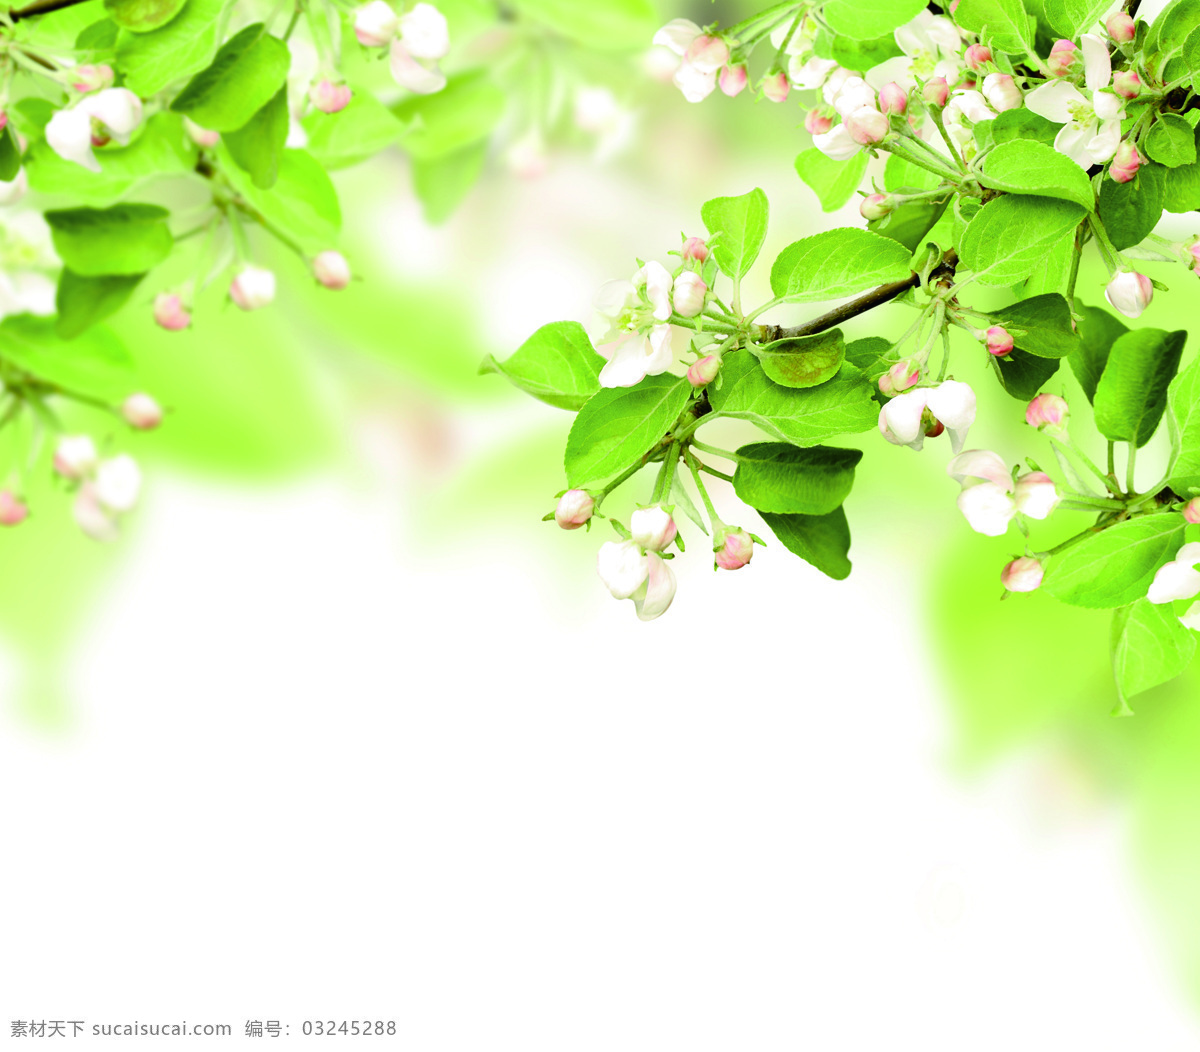 绿意 绿色 背景 清爽 春意 鲜花 背景底纹 底纹边框